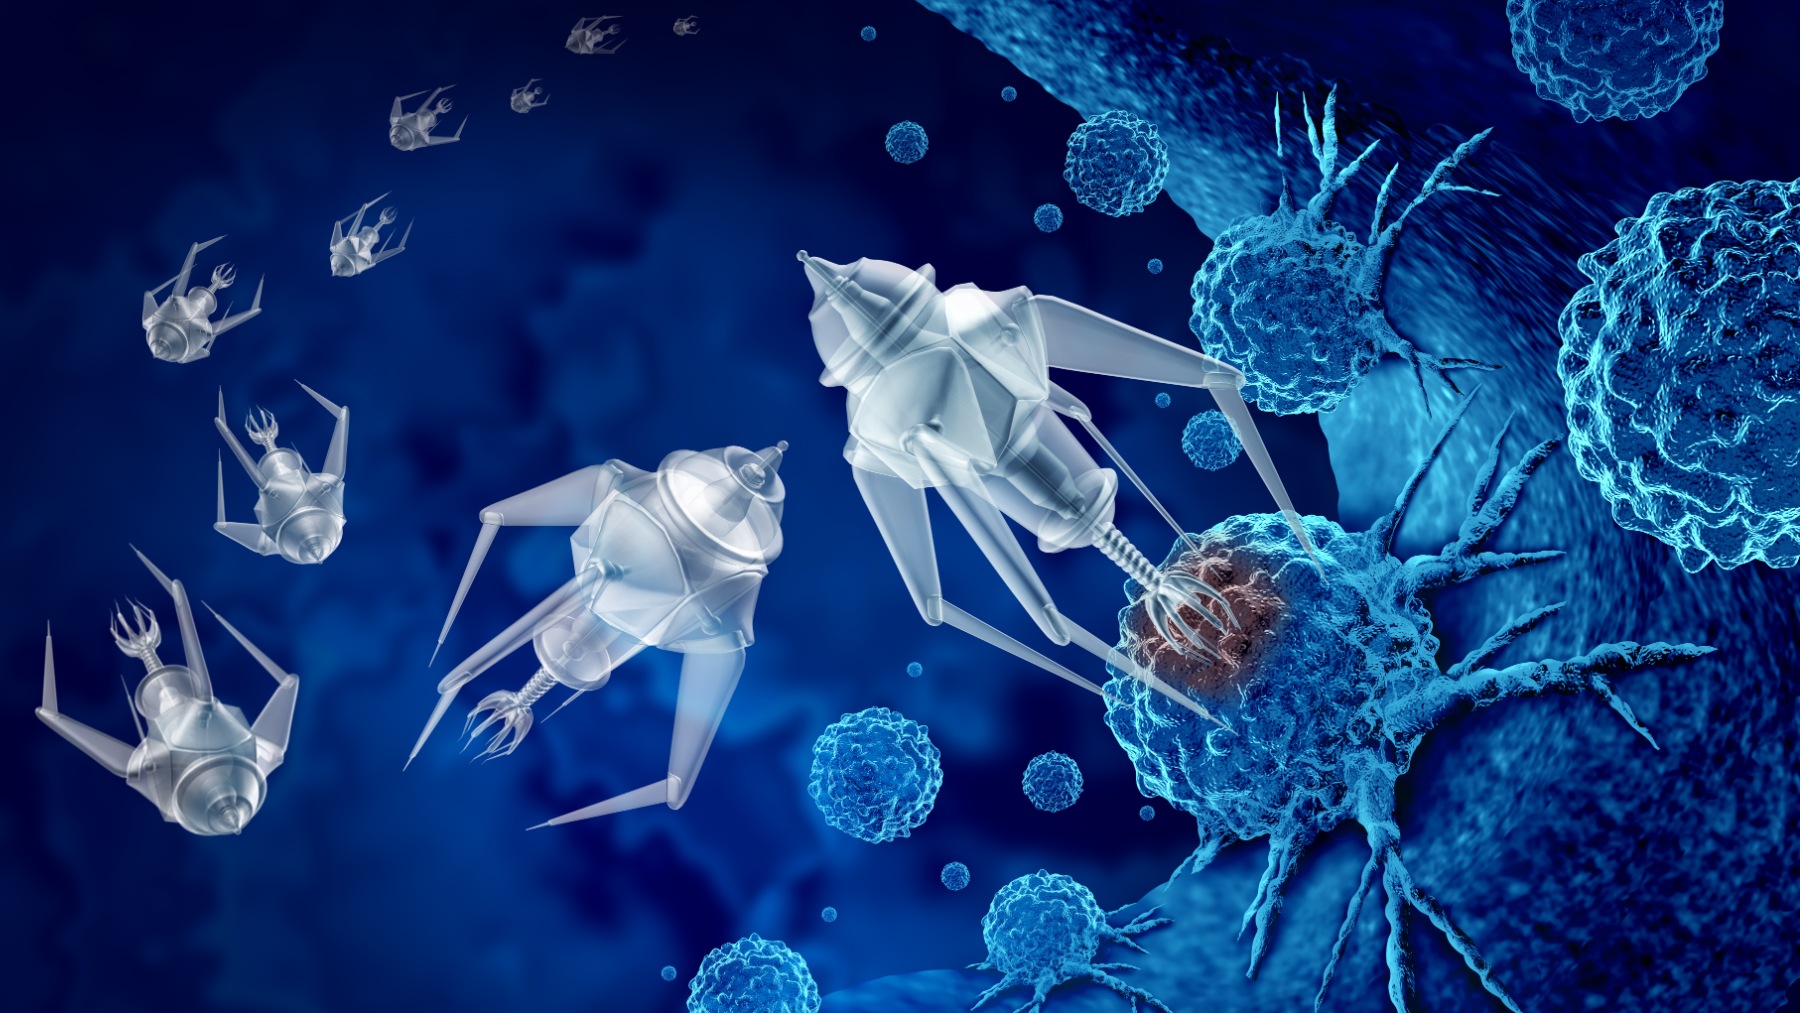 Recreación de un grupo de nanorrobots microscópicos o nanobots programados para matar células cancerosas o enfermedades humanas